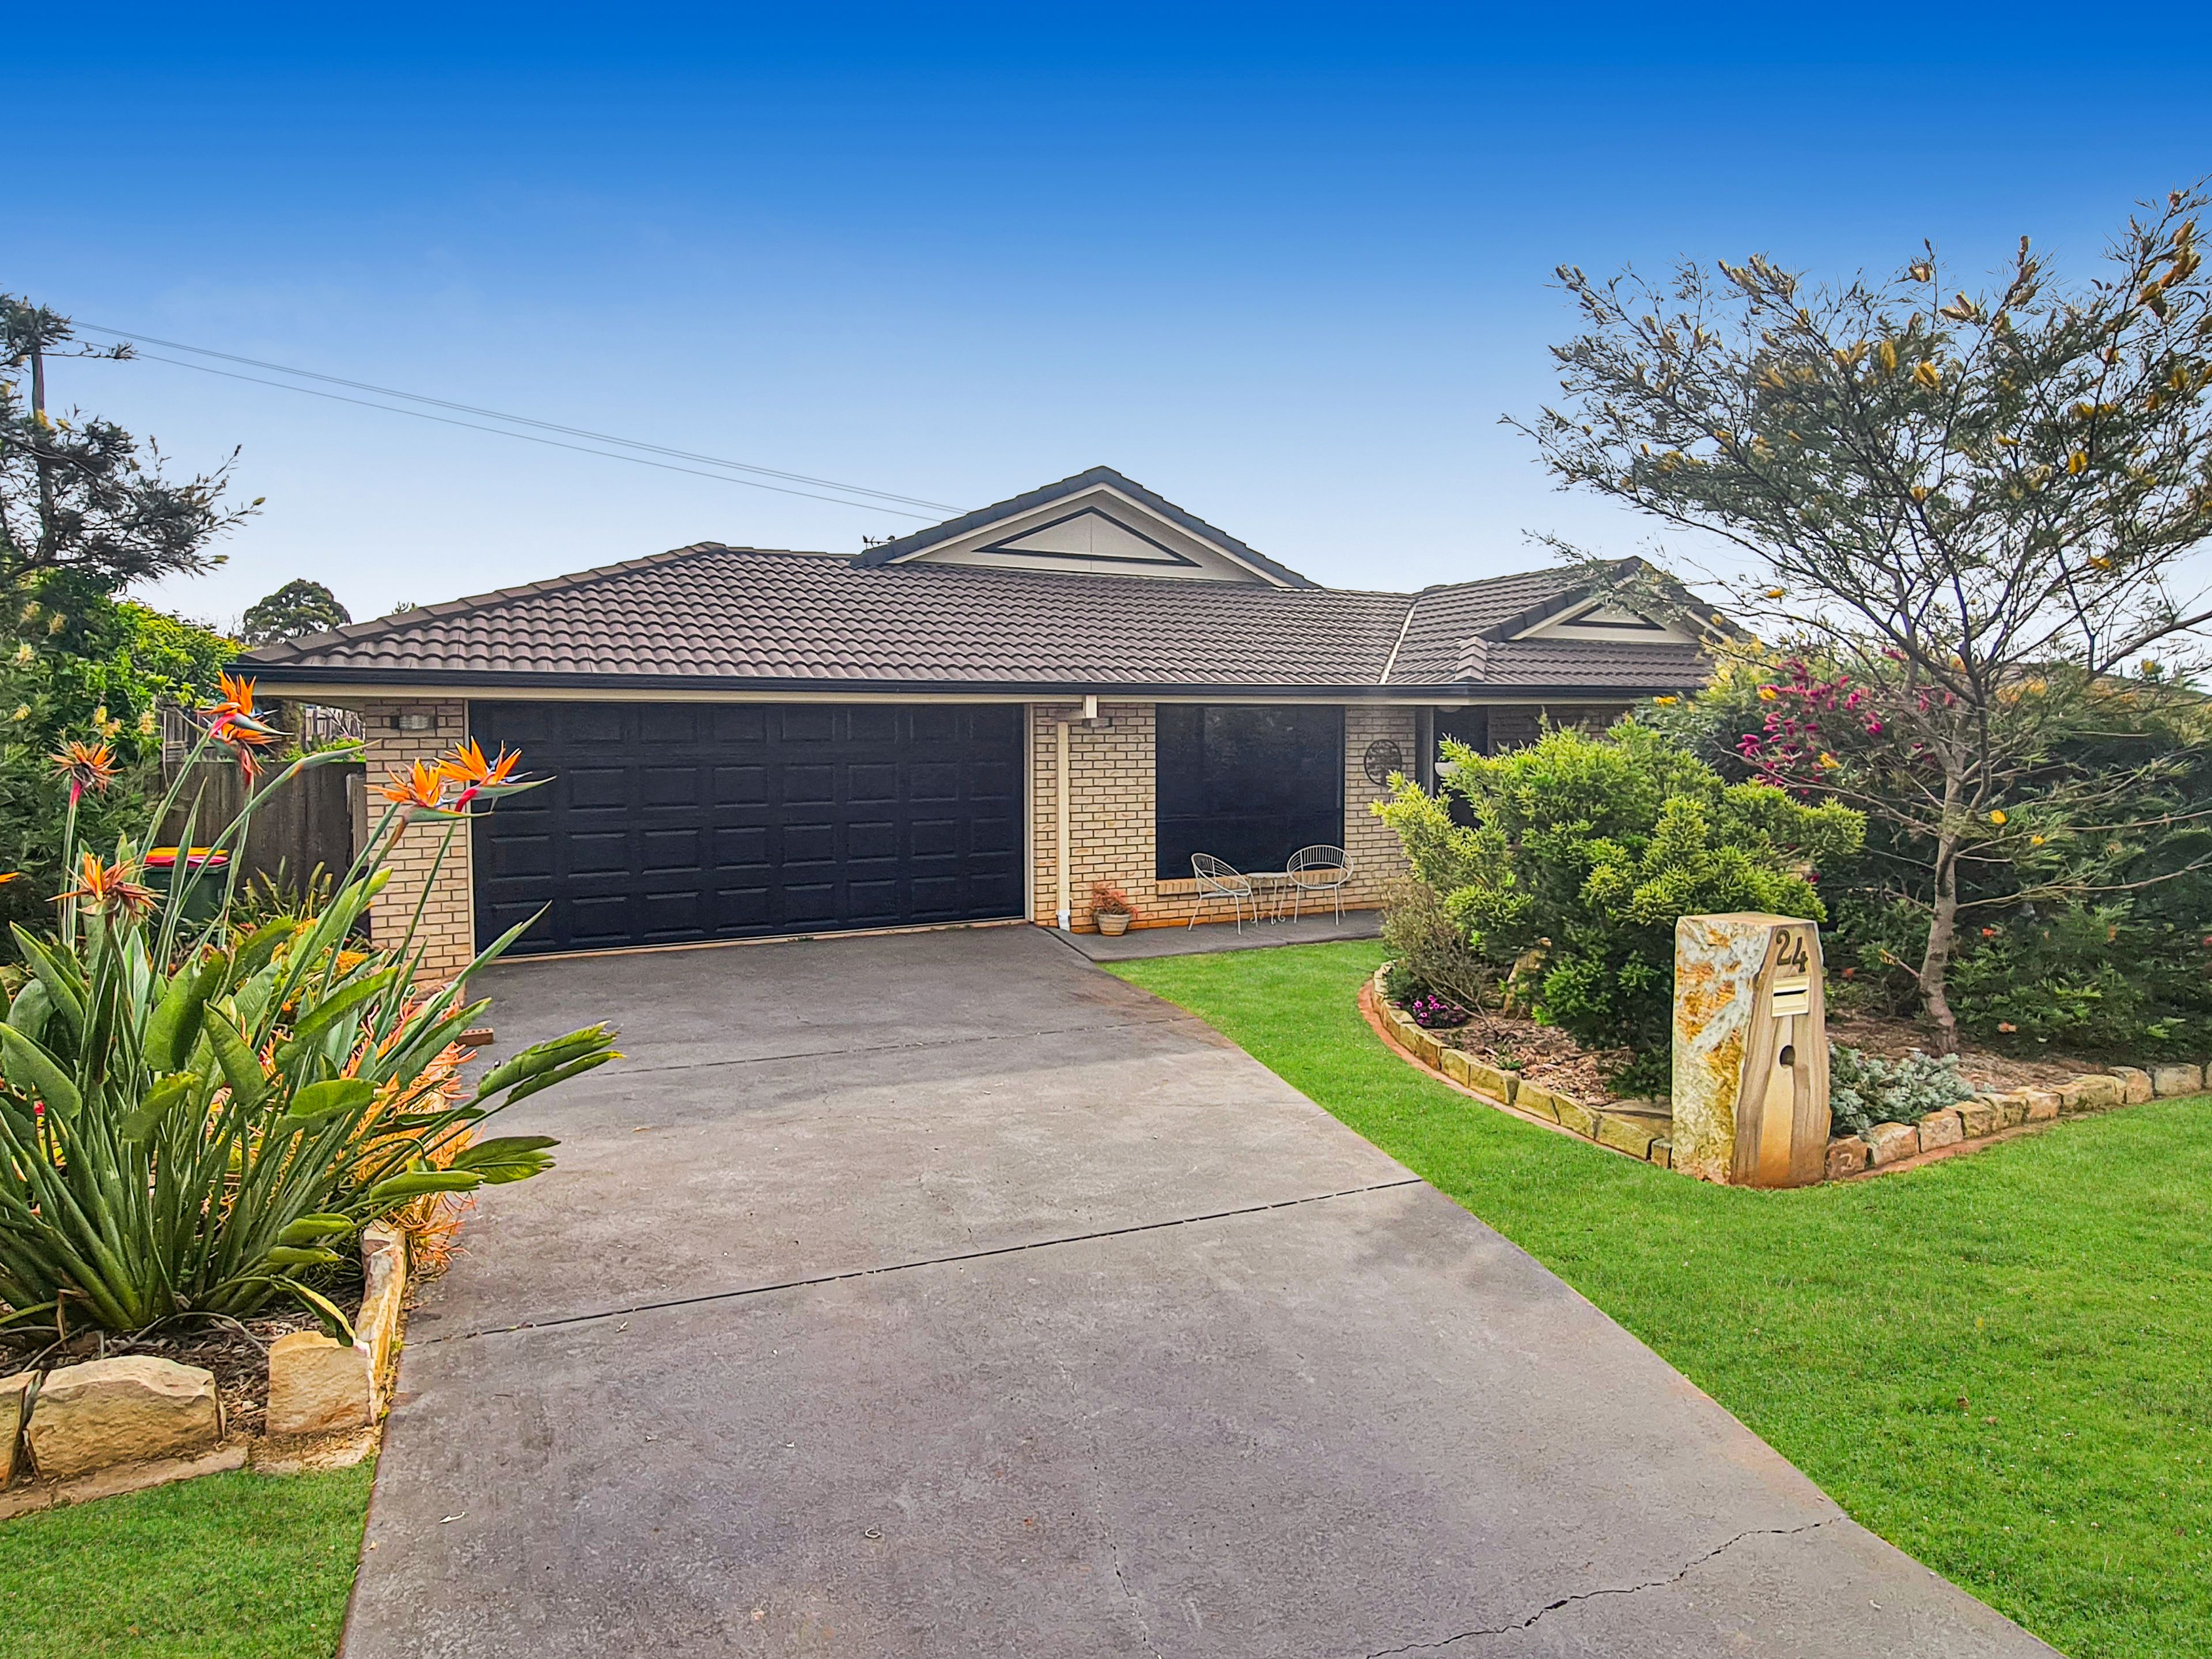 Sold House 24 Smythe Drive, Highfields QLD 4352 - Jan 24, 2023 - Homely